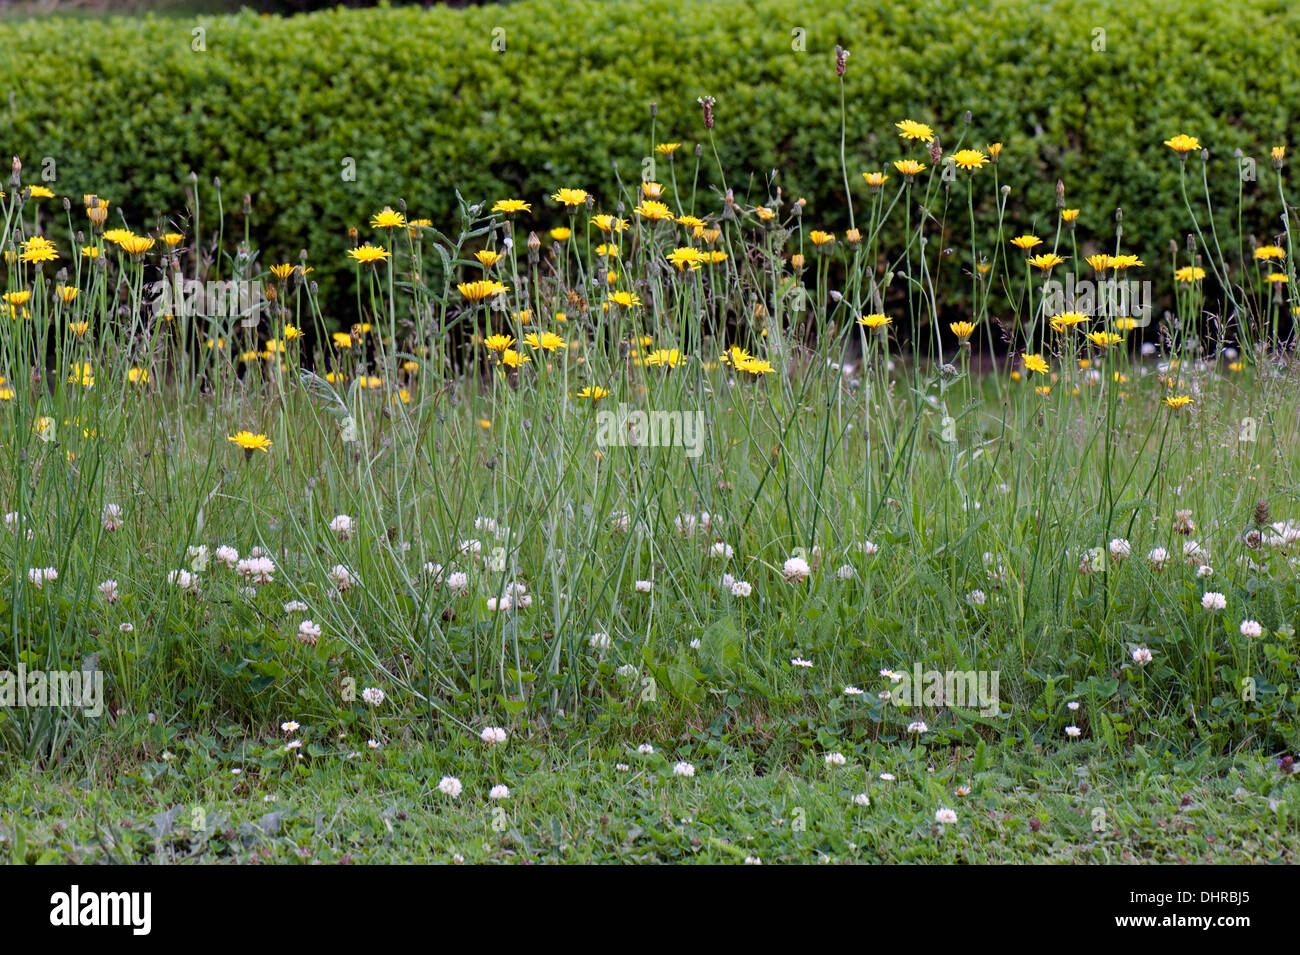 Jardin sauvage fleurs pour attirer les invertébrés et encourager la lutte biologique naturelle Banque D'Images